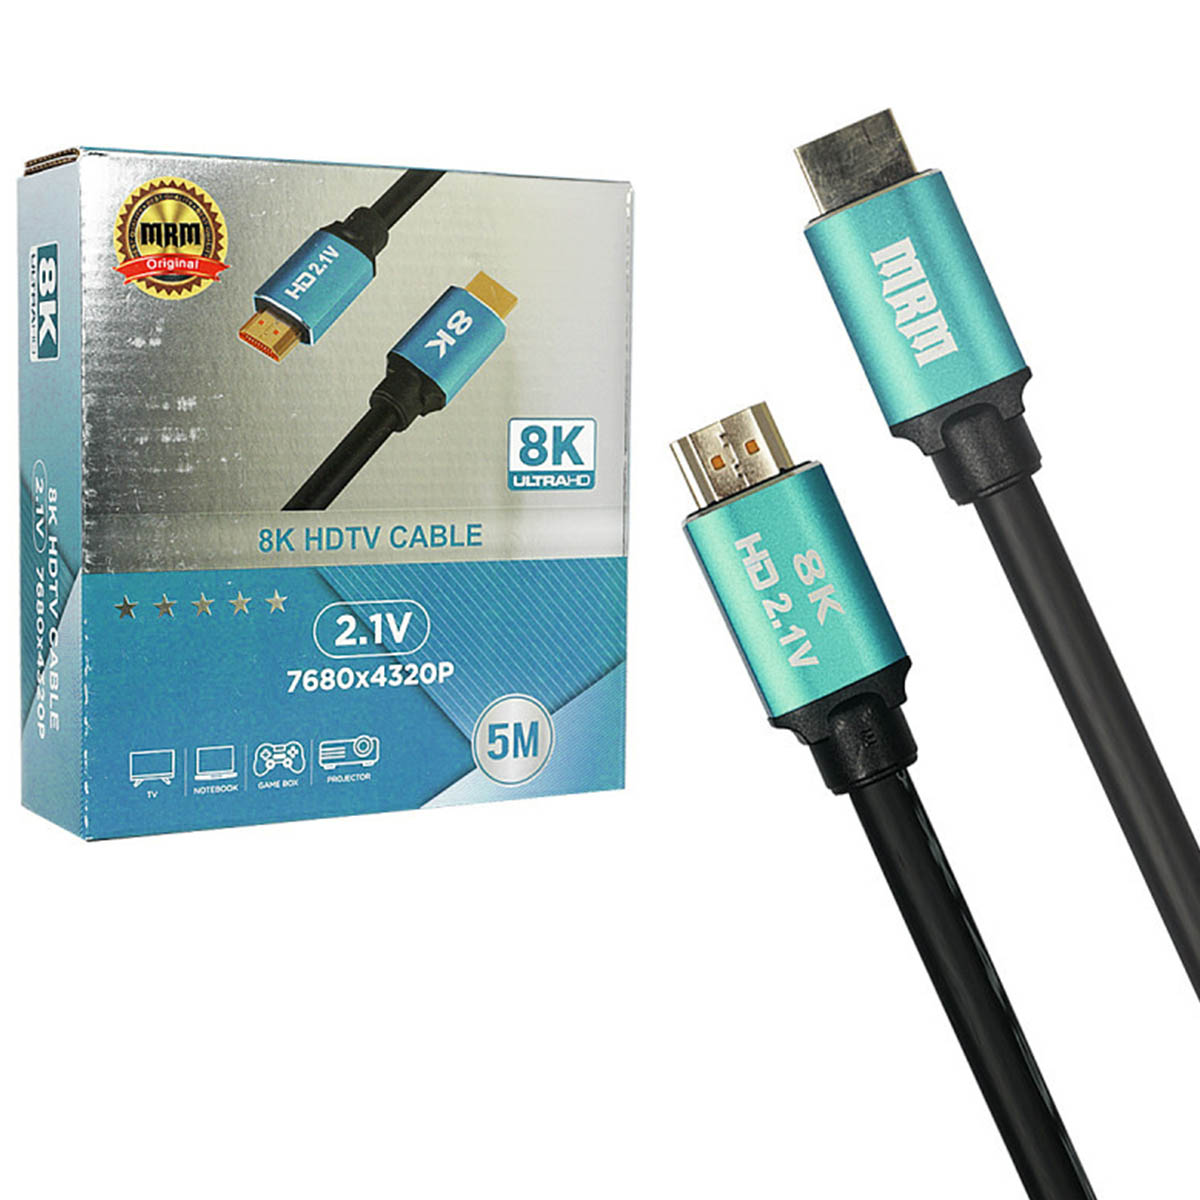 Цифровой кабель HDMI, для подключения ПК, Apple TV, монитора, игровых приставок, 8K Ultra HD, длина 5 метров, цвет черный